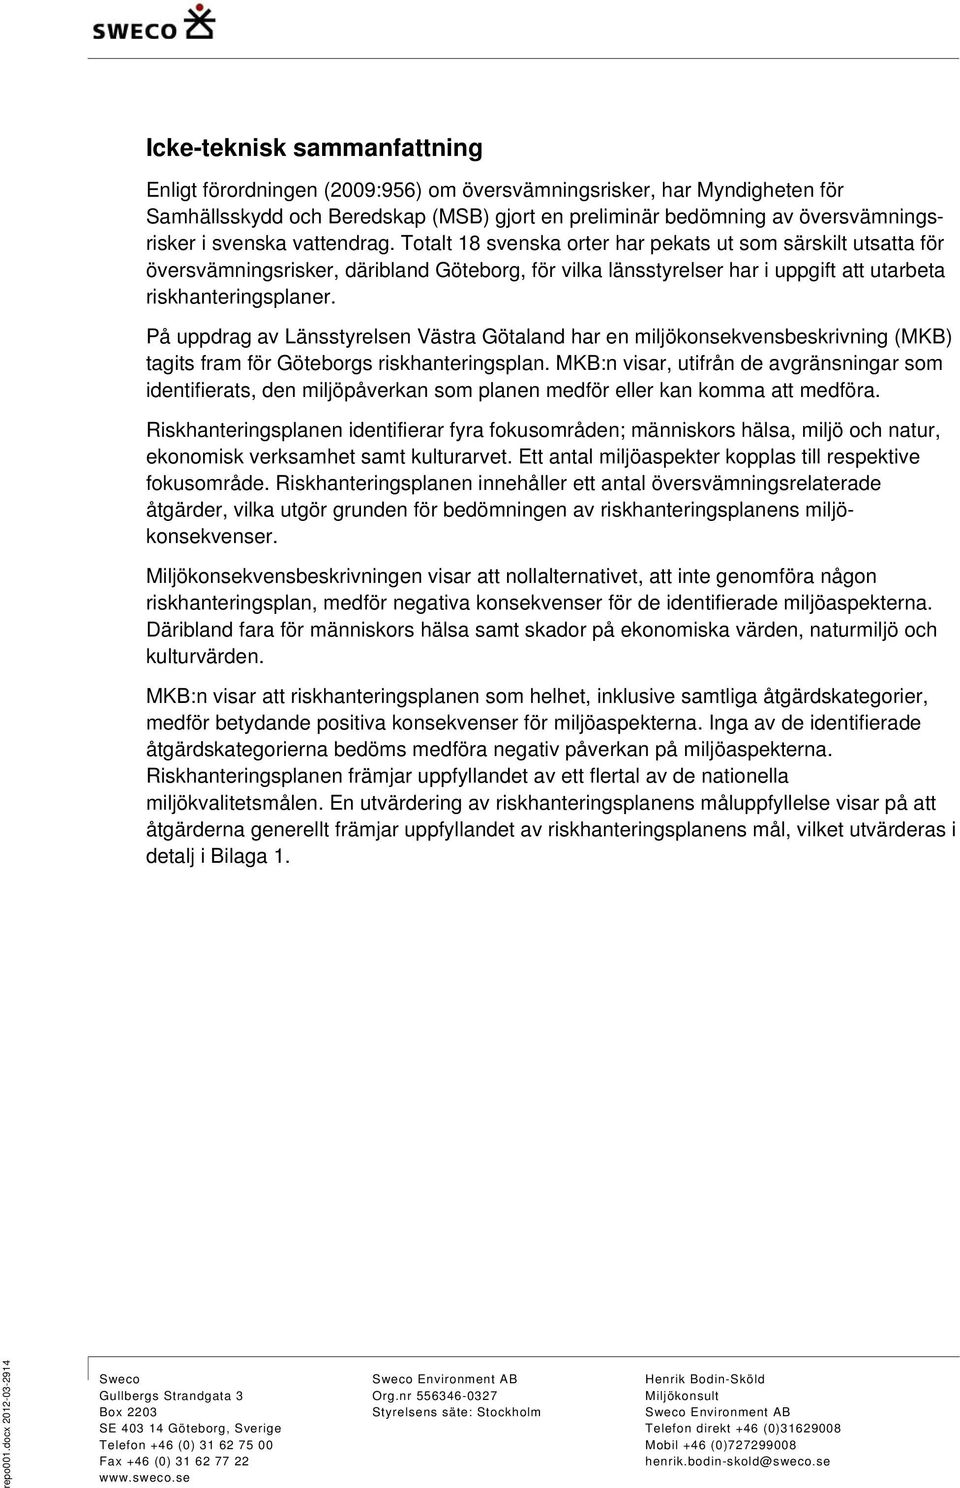 På uppdrag av Länsstyrelsen Västra Götaland har en miljökonsekvensbeskrivning (MKB) tagits fram för Göteborgs riskhanteringsplan.